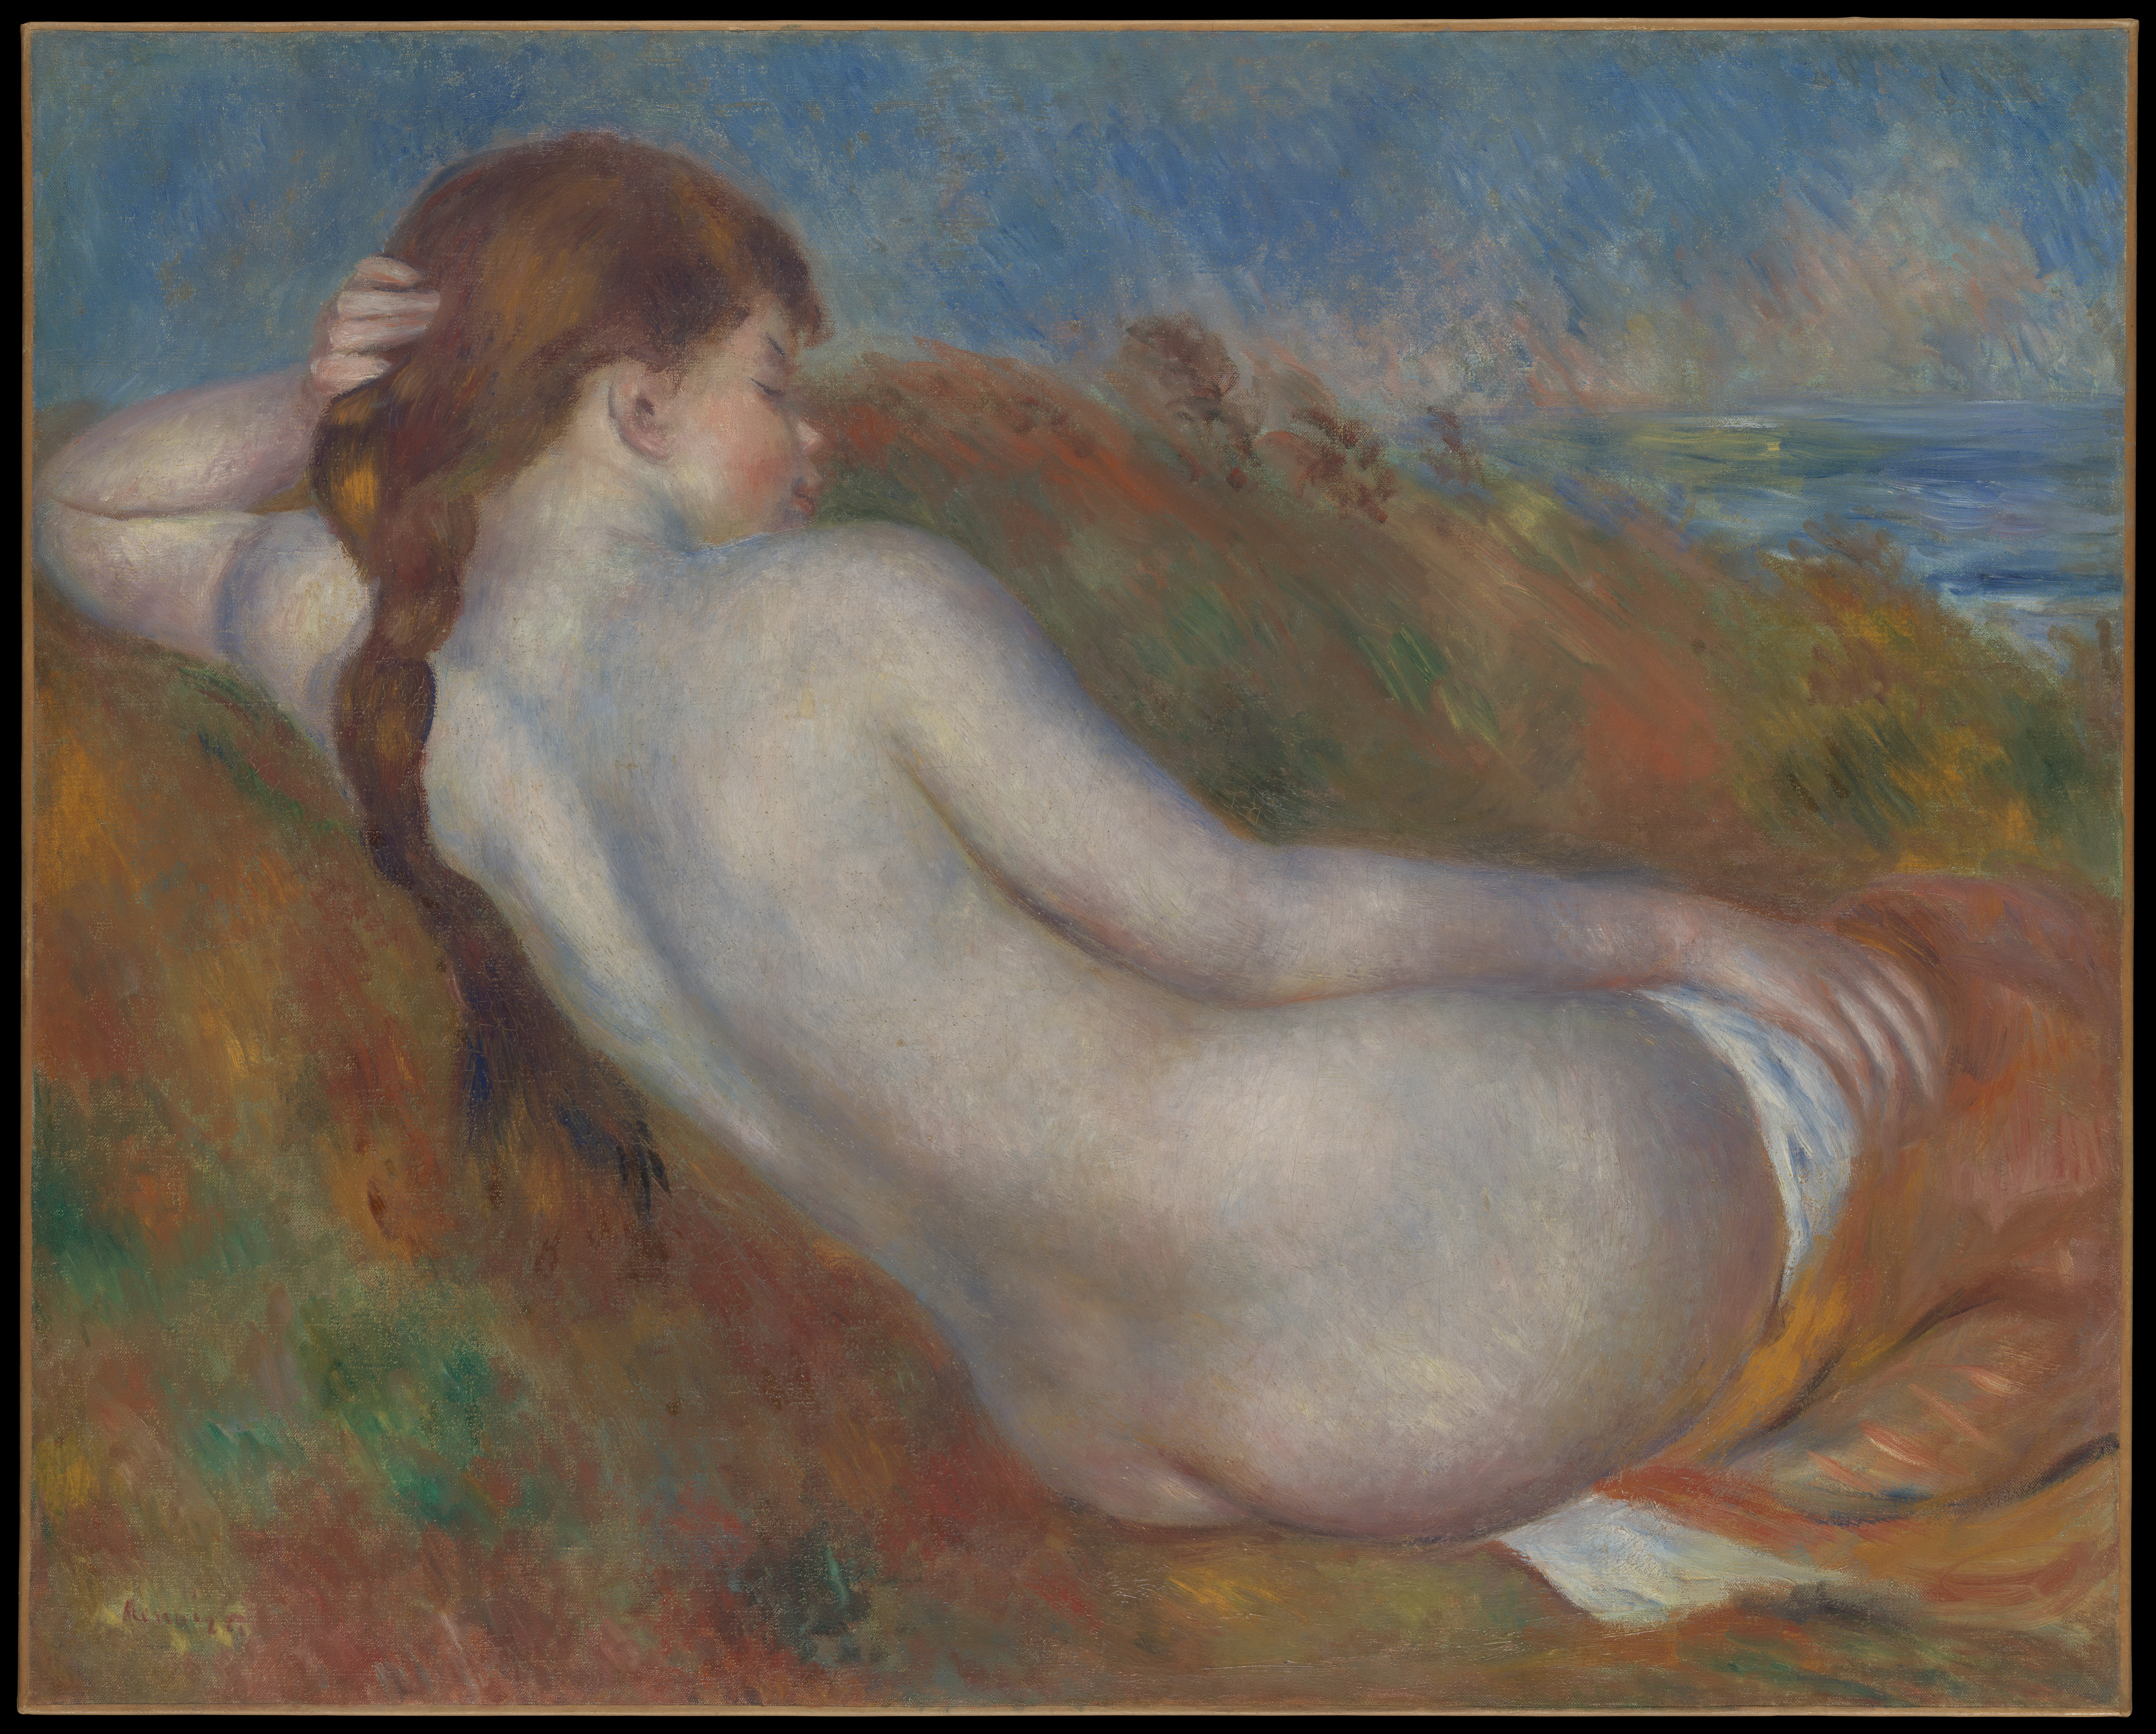 Nu couché by Pierre-Auguste Renoir - 1883 - 65.1 x 81.3 cm Metropolitan Museum of Art